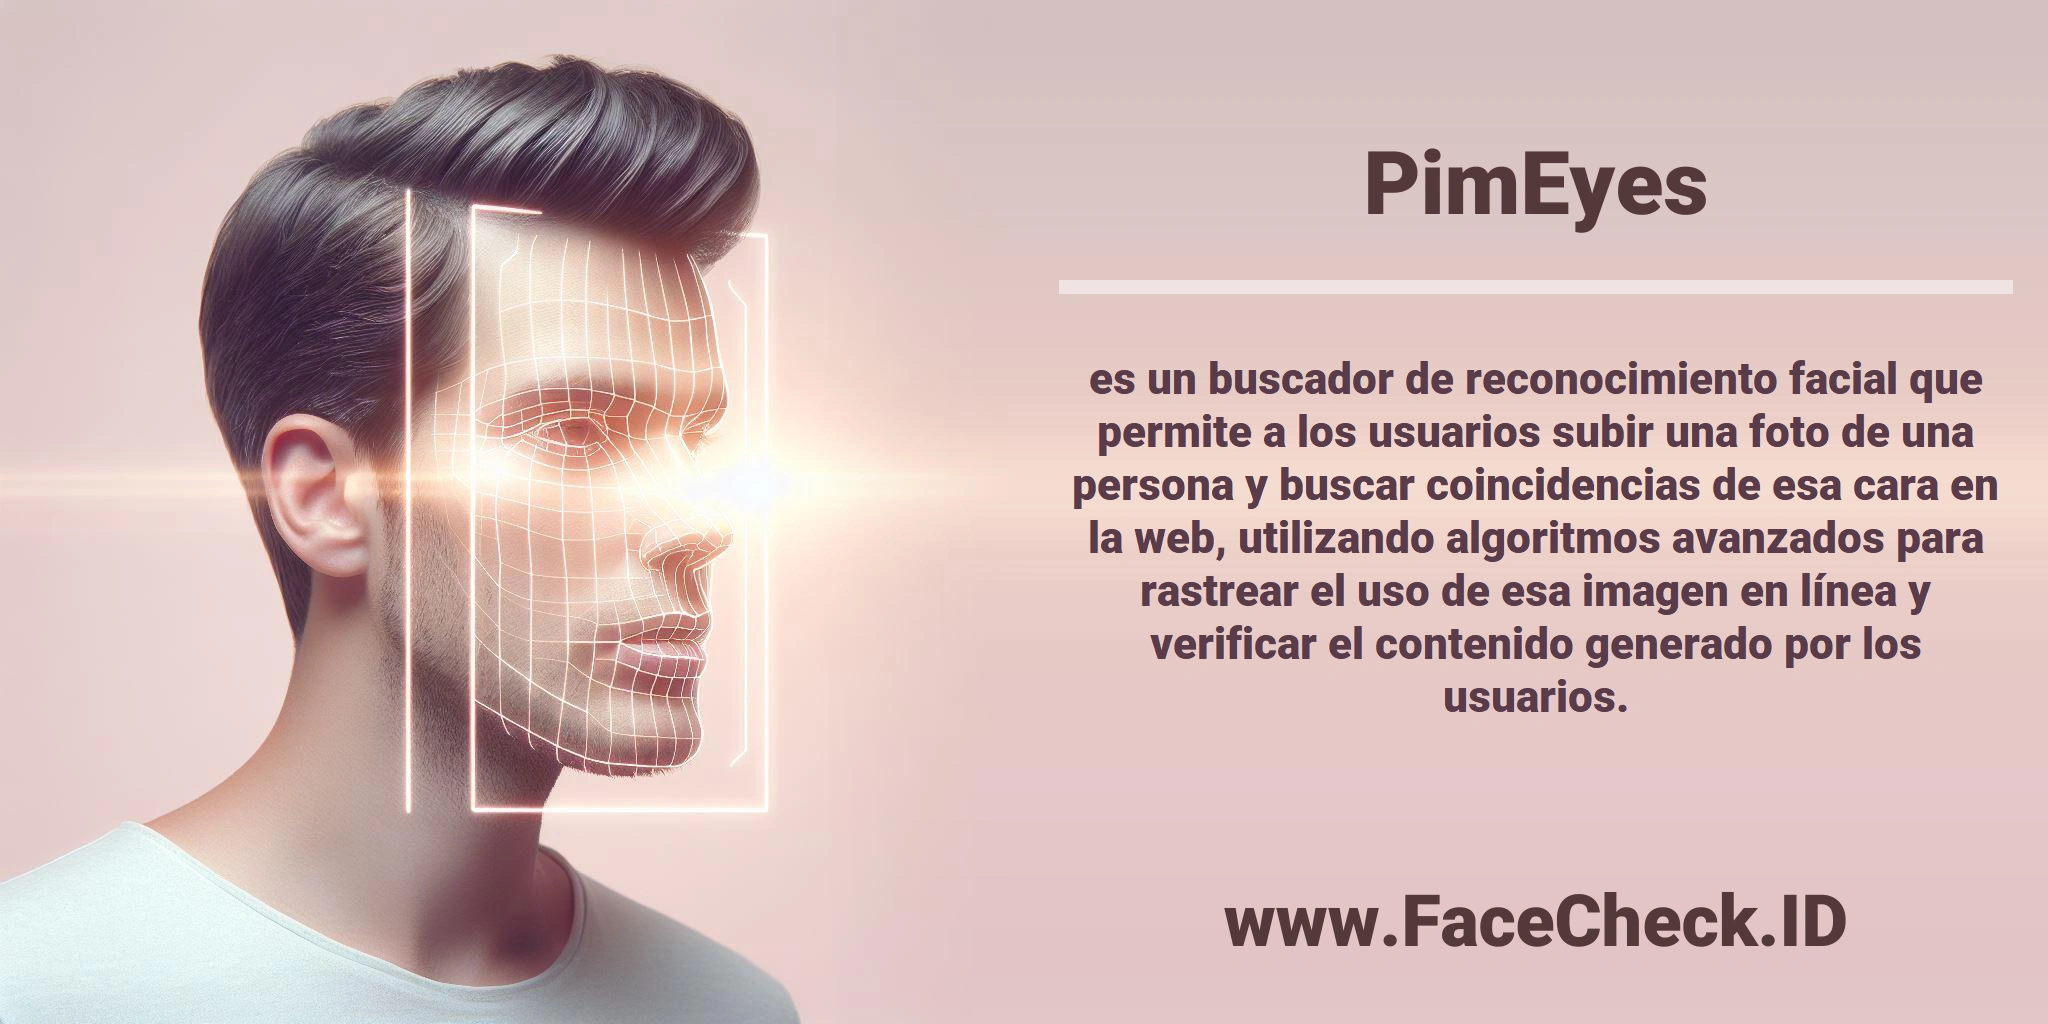 <b>PimEyes</b> es un buscador de reconocimiento facial que permite a los usuarios subir una foto de una persona y buscar coincidencias de esa cara en la web, utilizando algoritmos avanzados para rastrear el uso de esa imagen en línea y verificar el contenido generado por los usuarios.